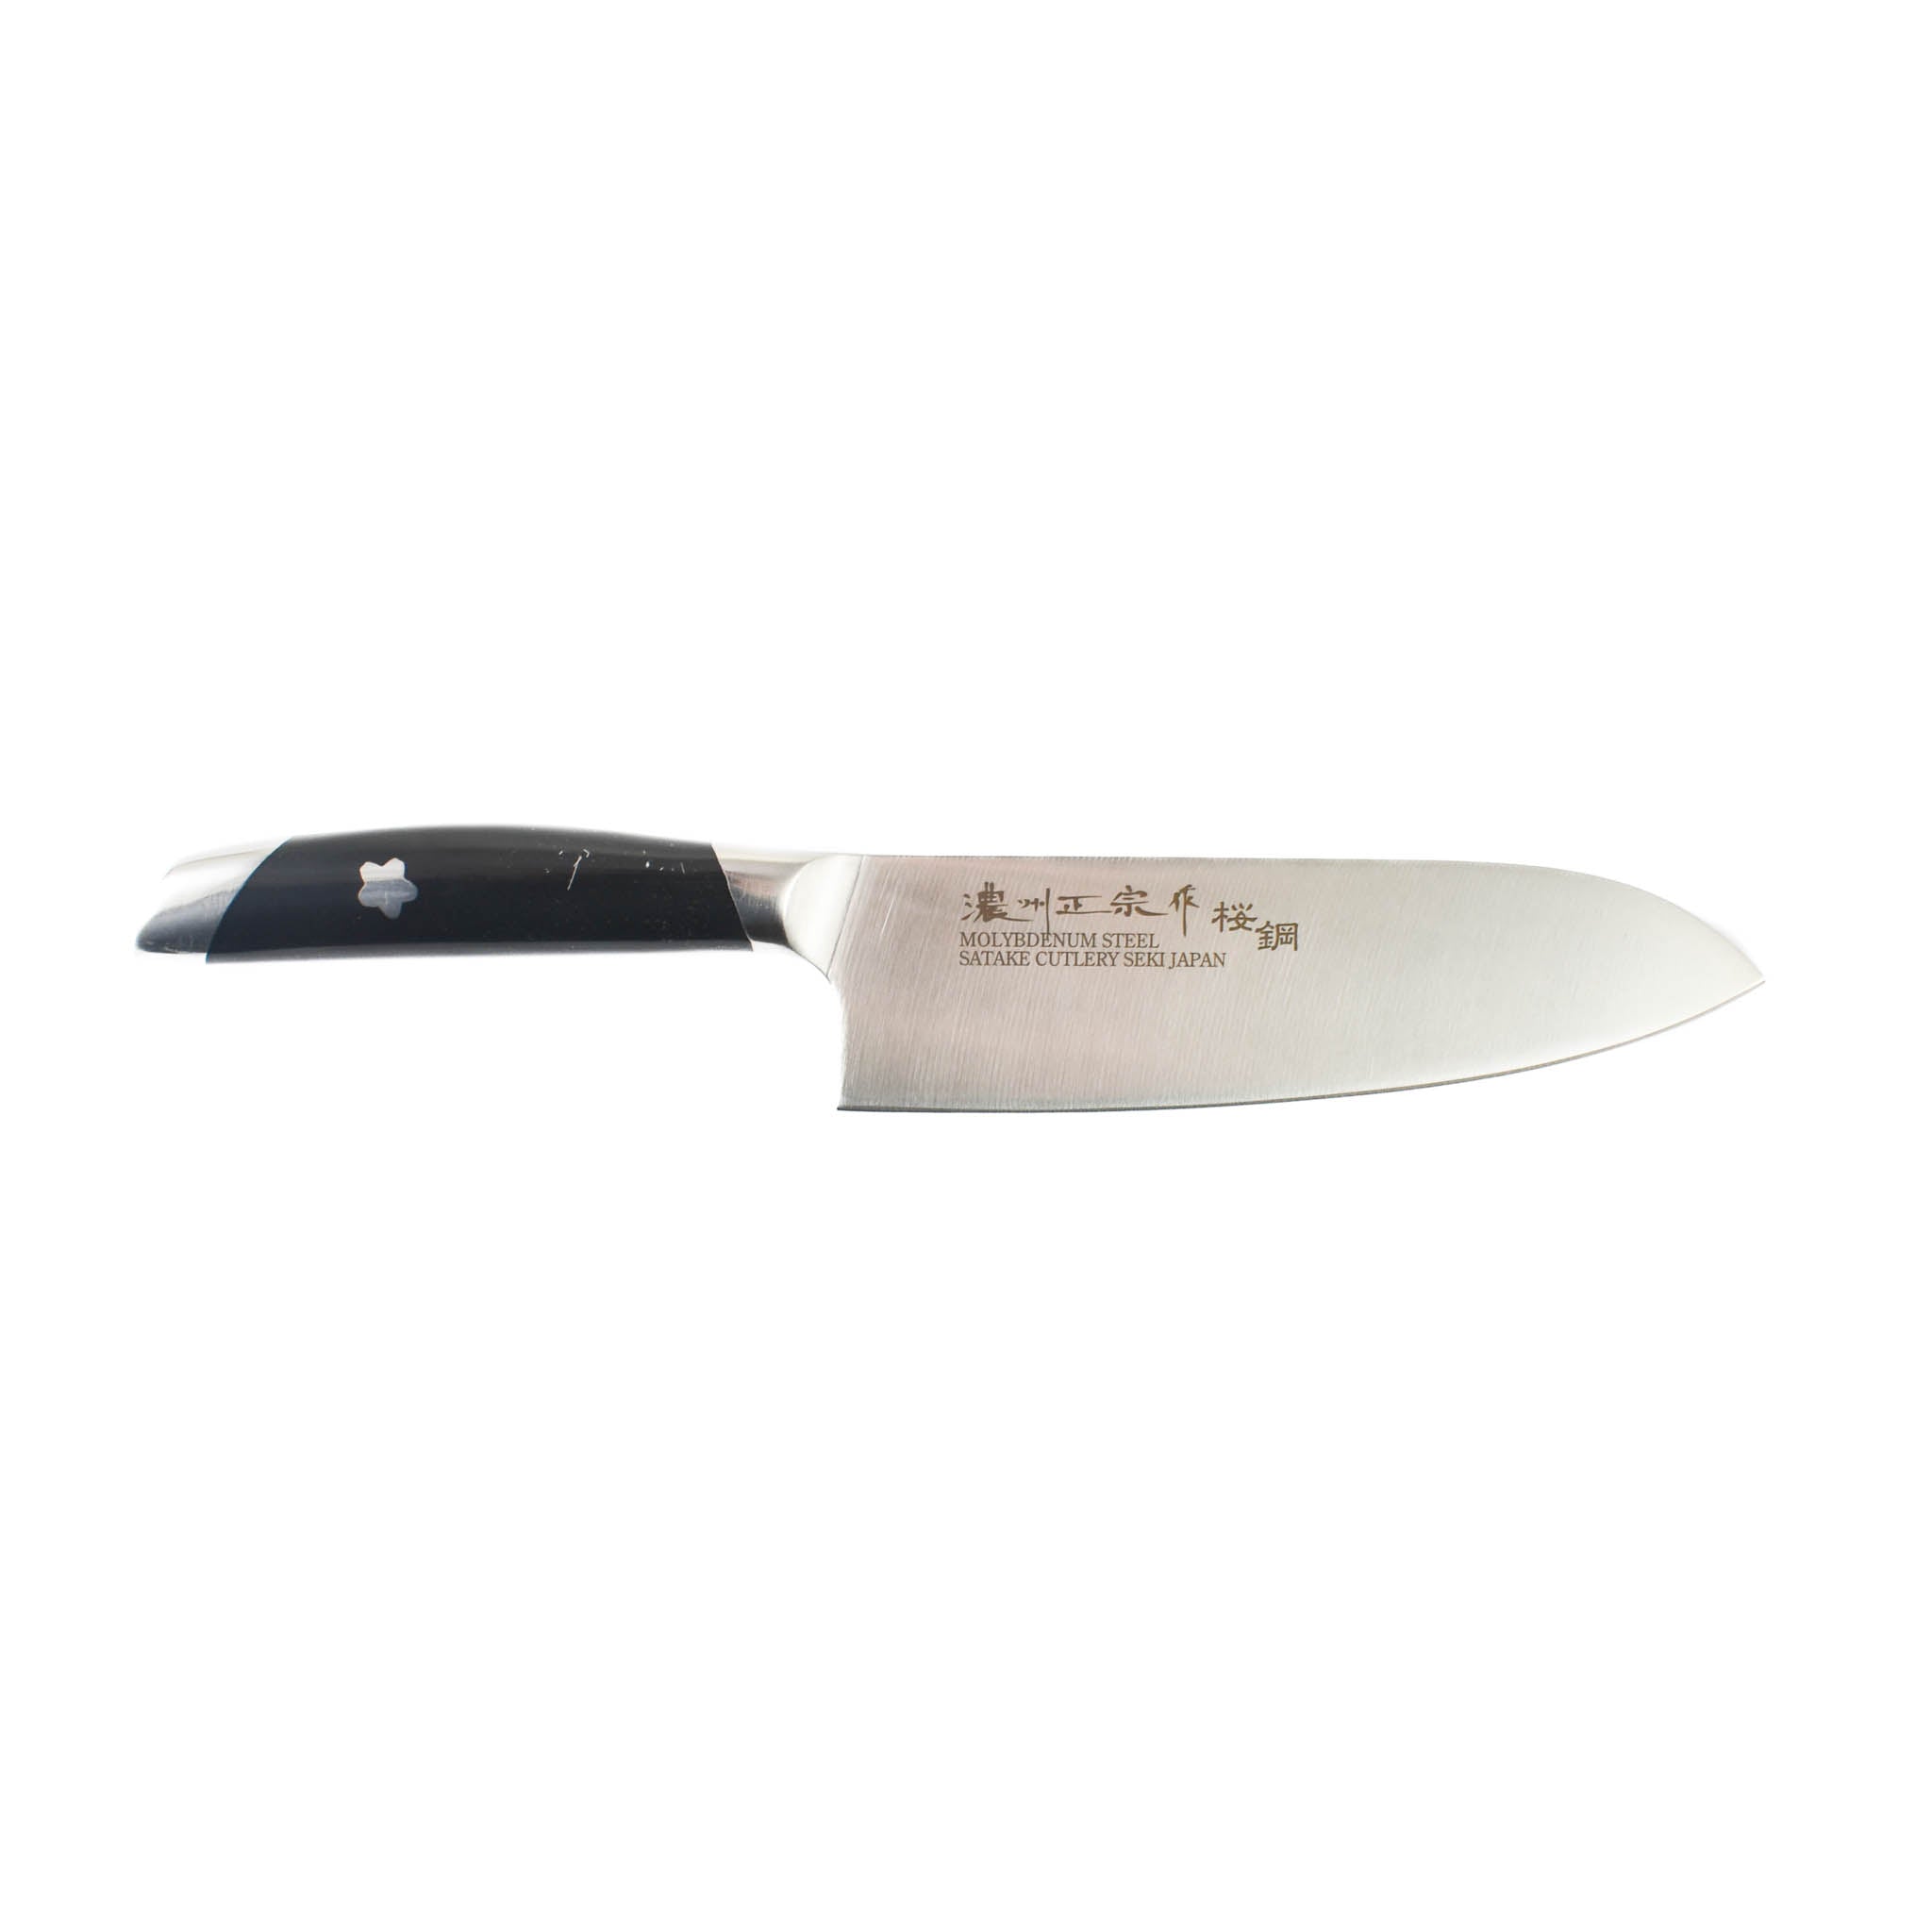 Japanese Seki Santoku Knife, 17cm